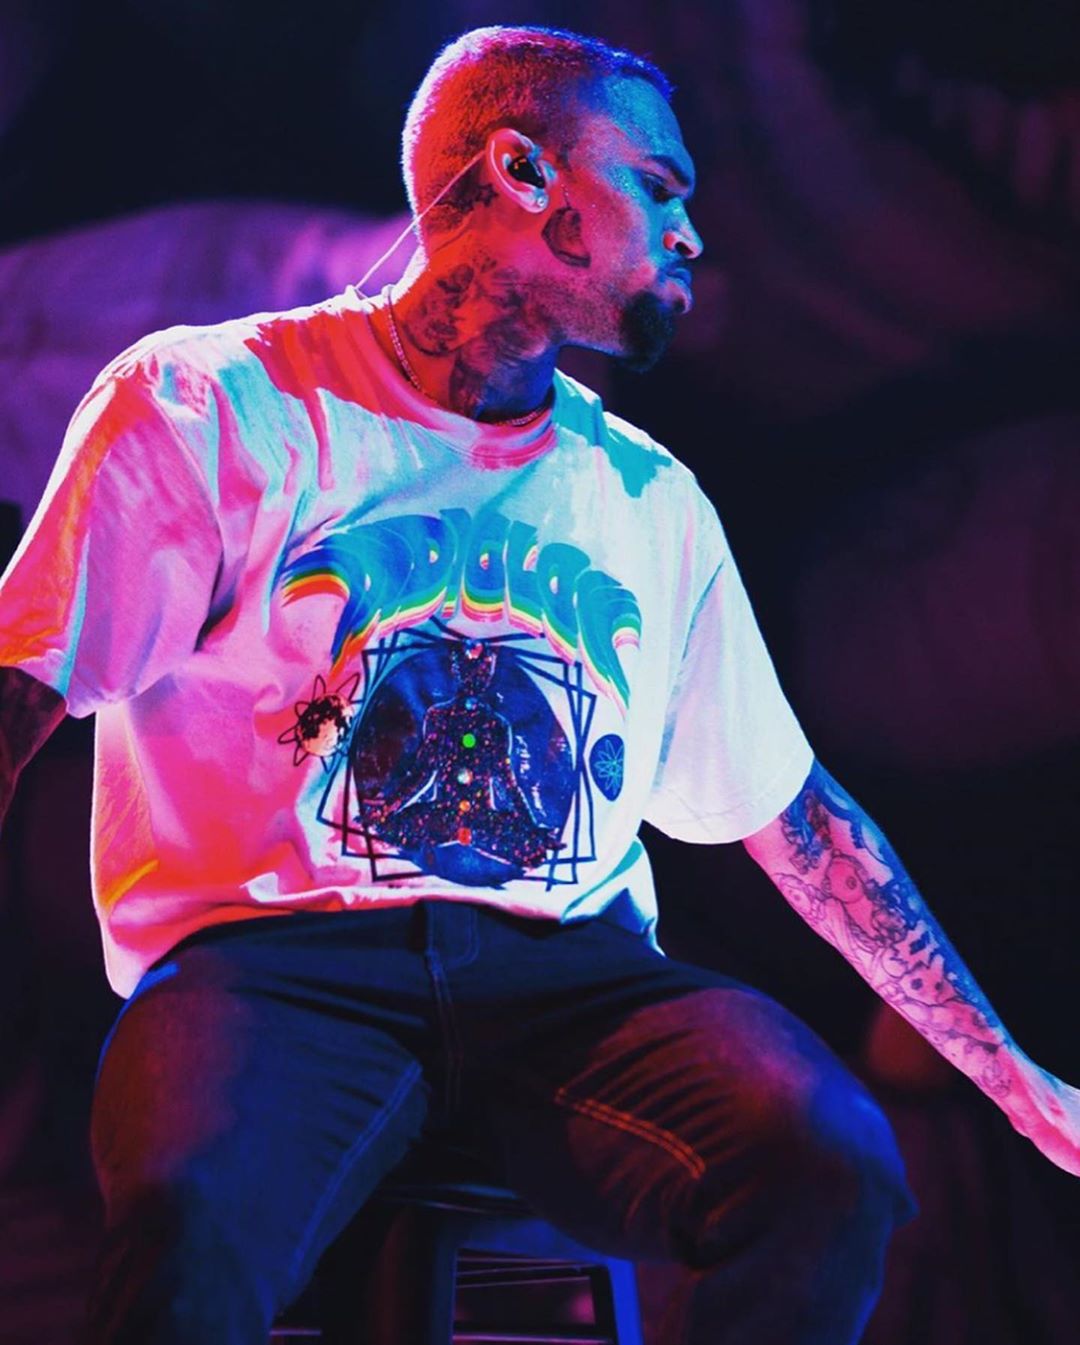 Chris Brown Tattoos an Air Jordan 3 on Face | Grailify